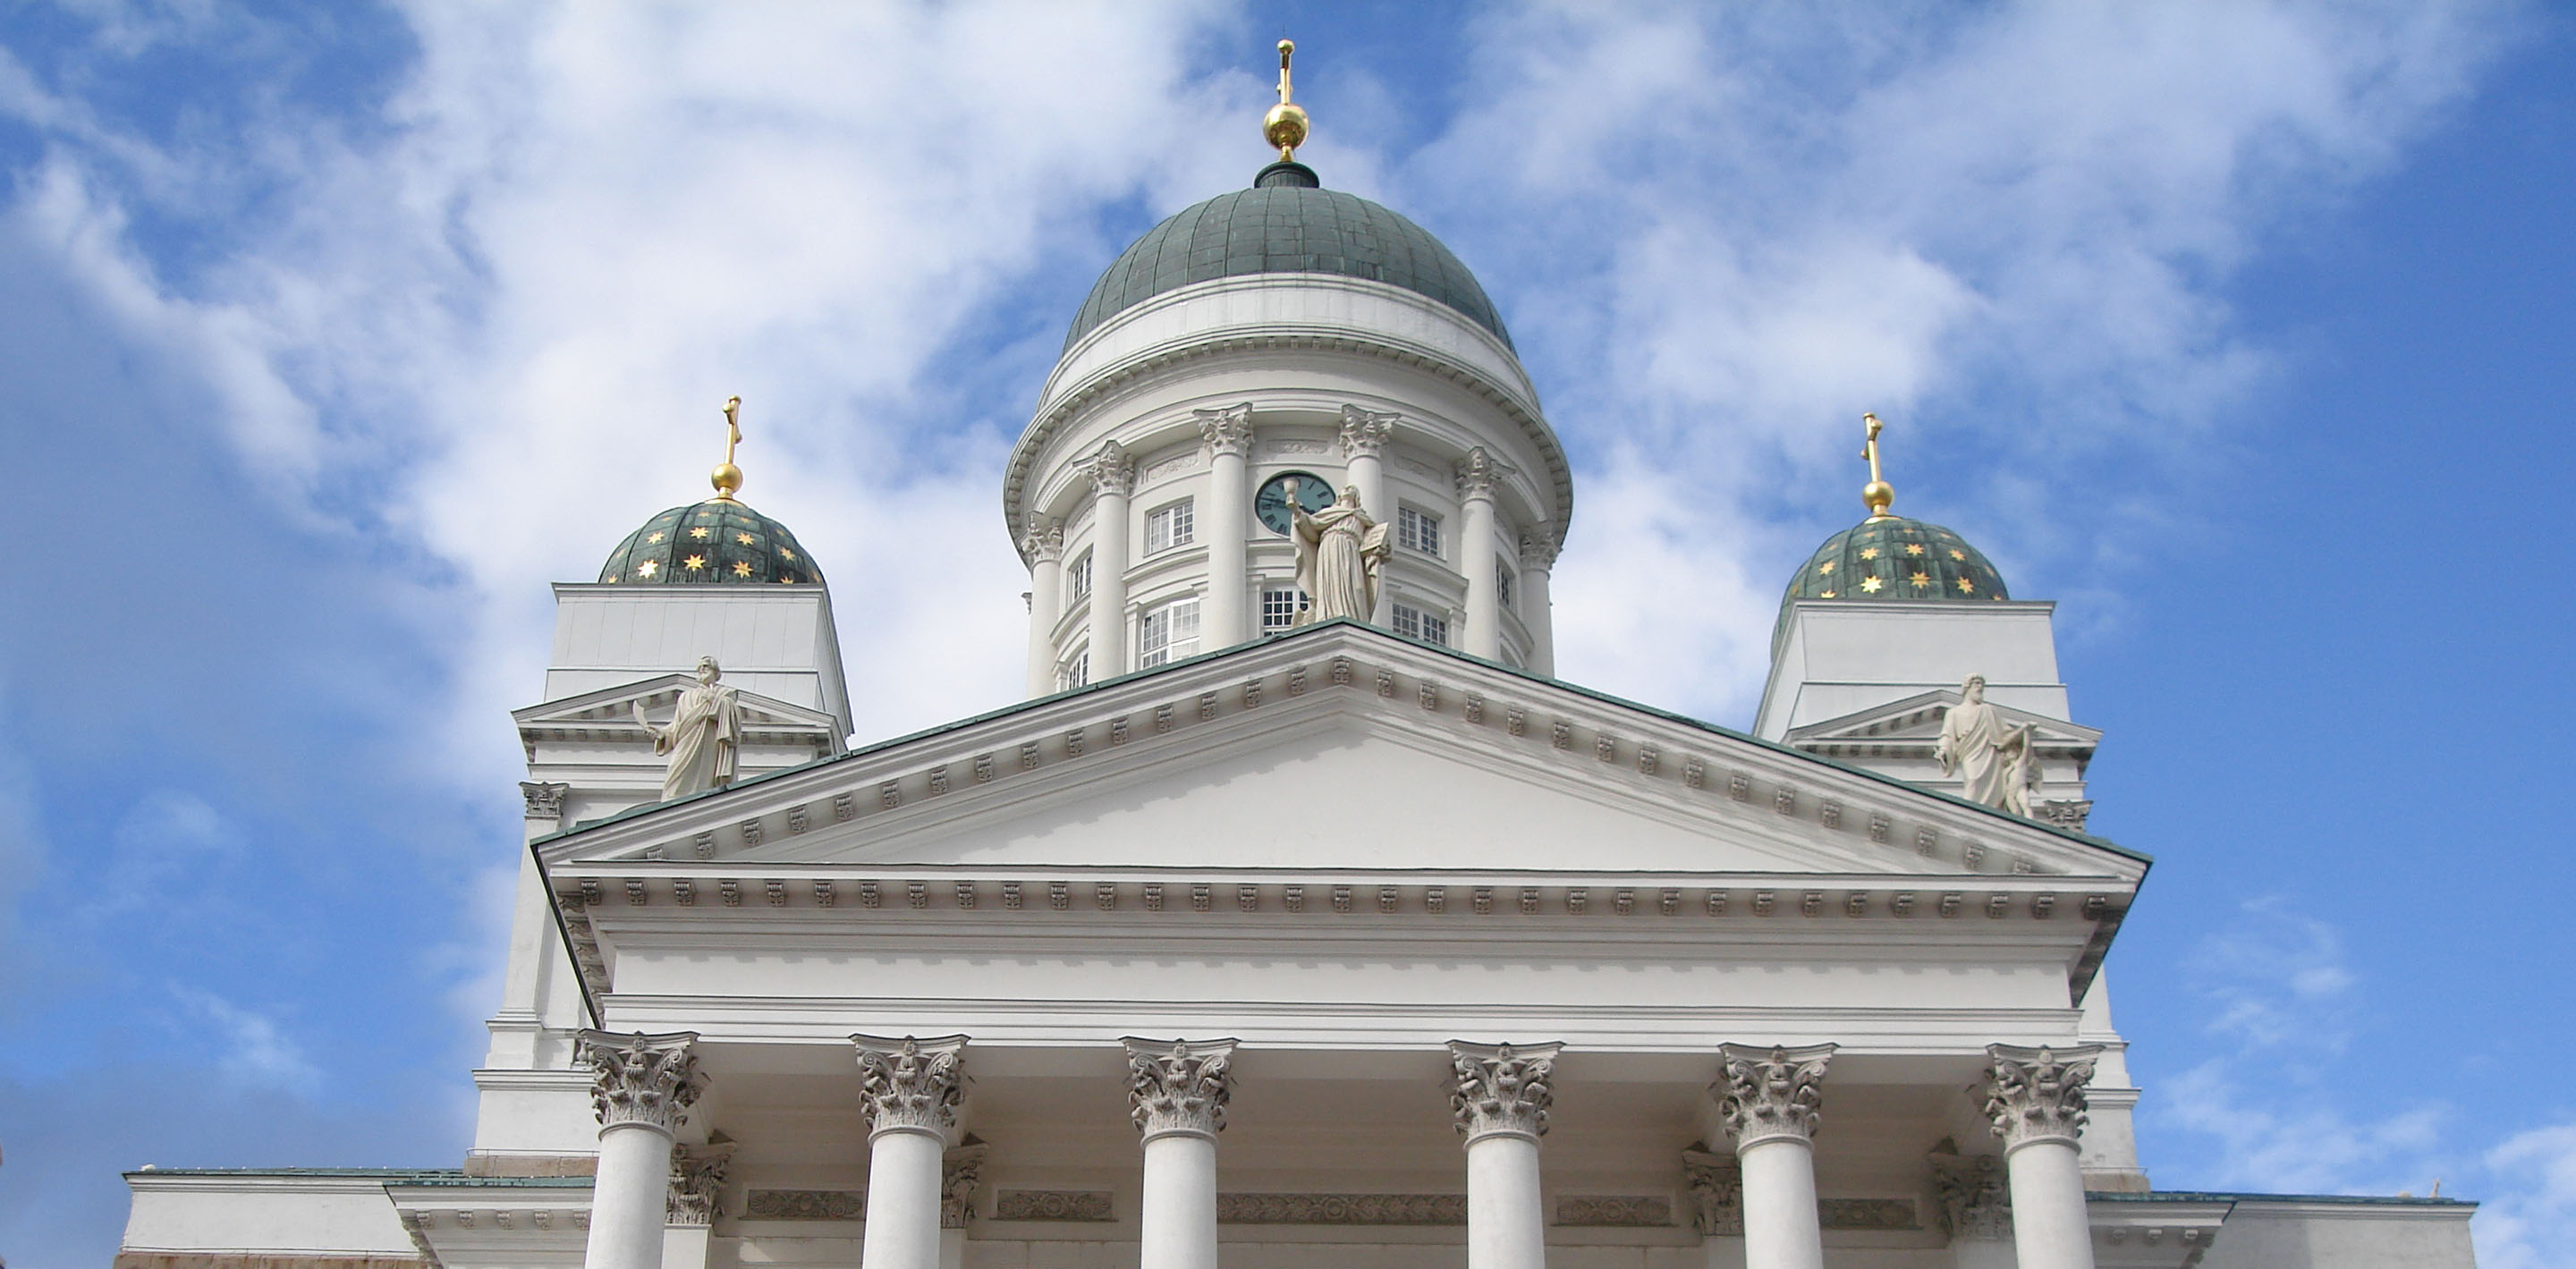 Dom von Helsinki
